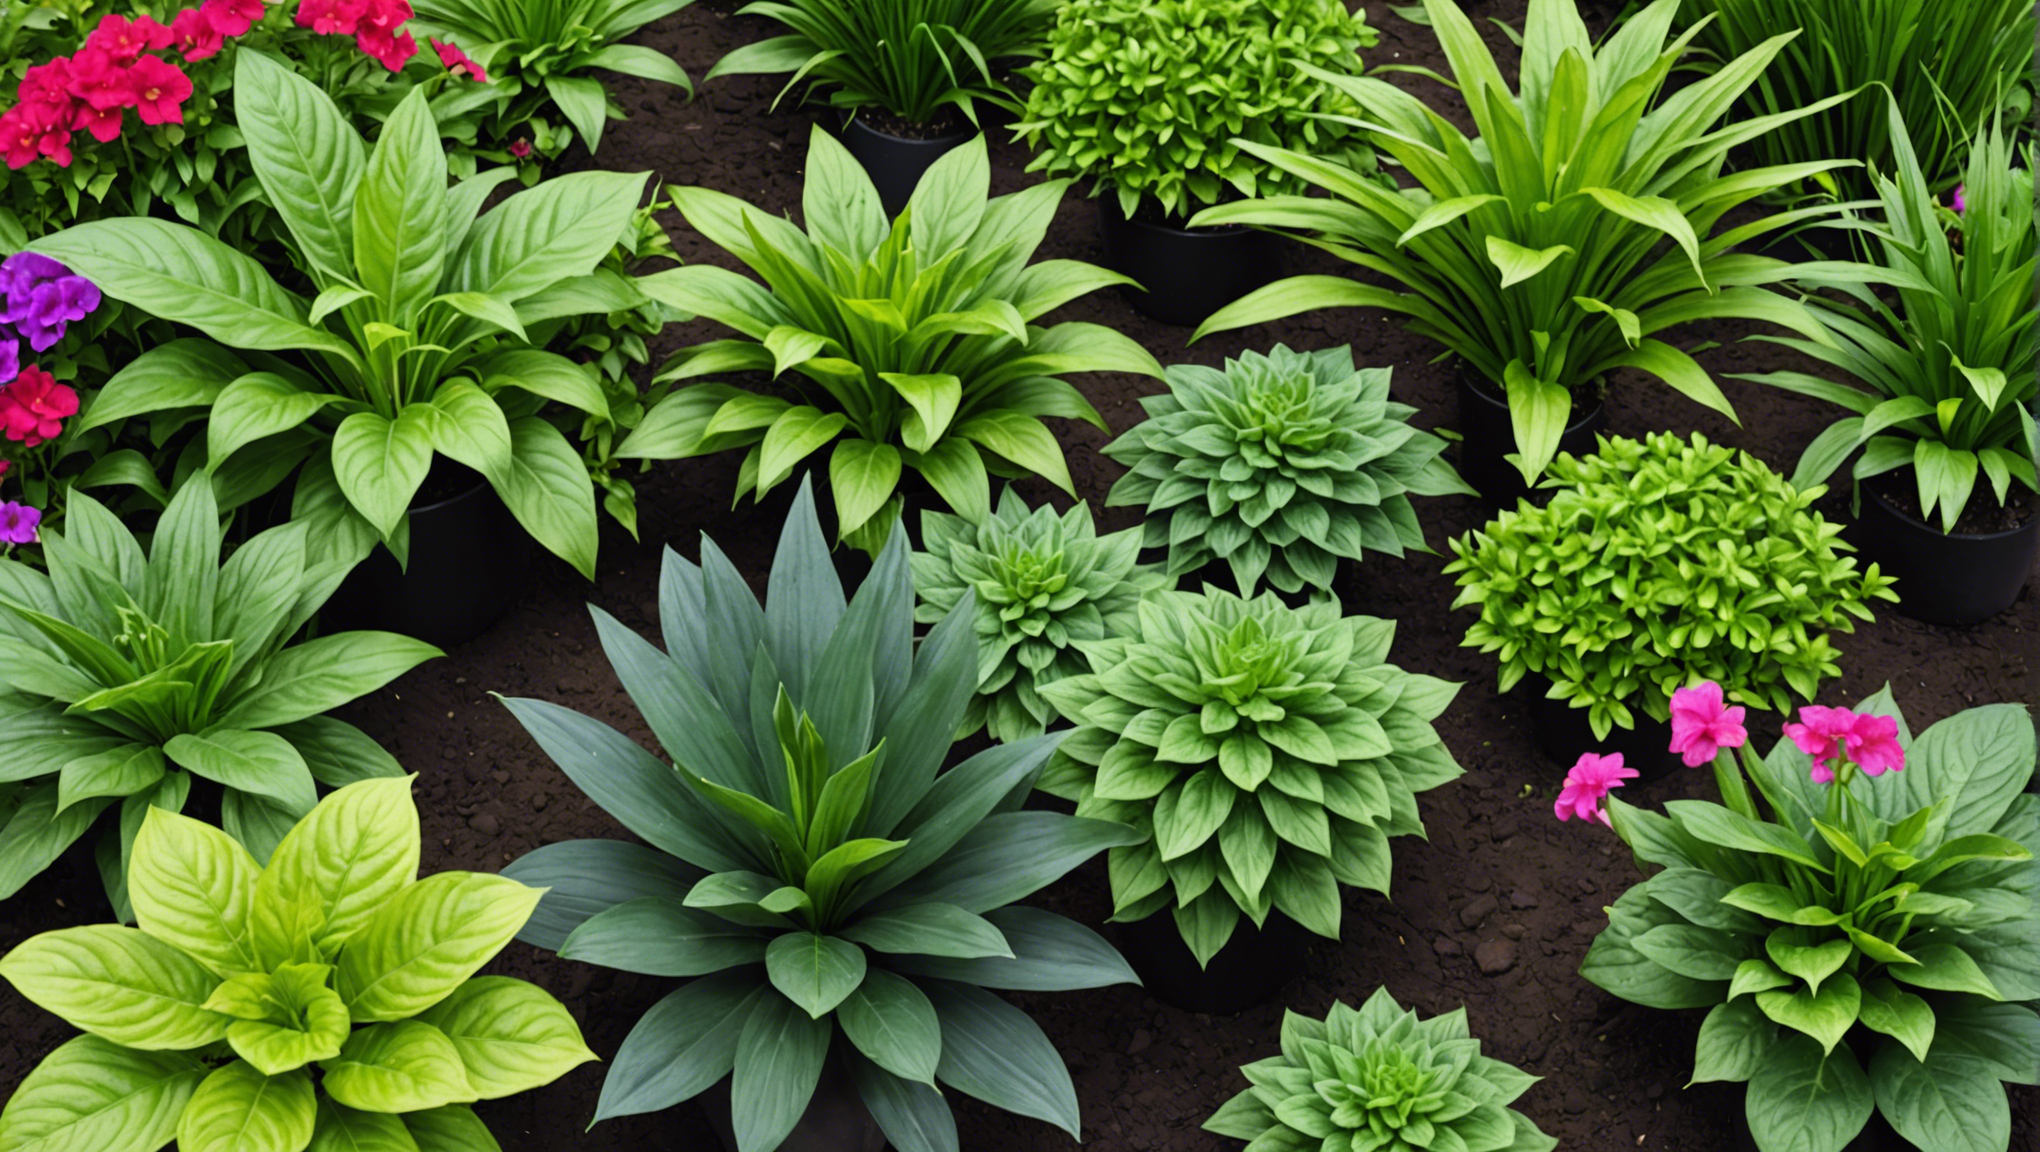 découvrez comment le fertilisant naturel peut vous aider à obtenir des plantes luxuriantes sans utiliser de produits chimiques, pour un jardin sain et naturel.